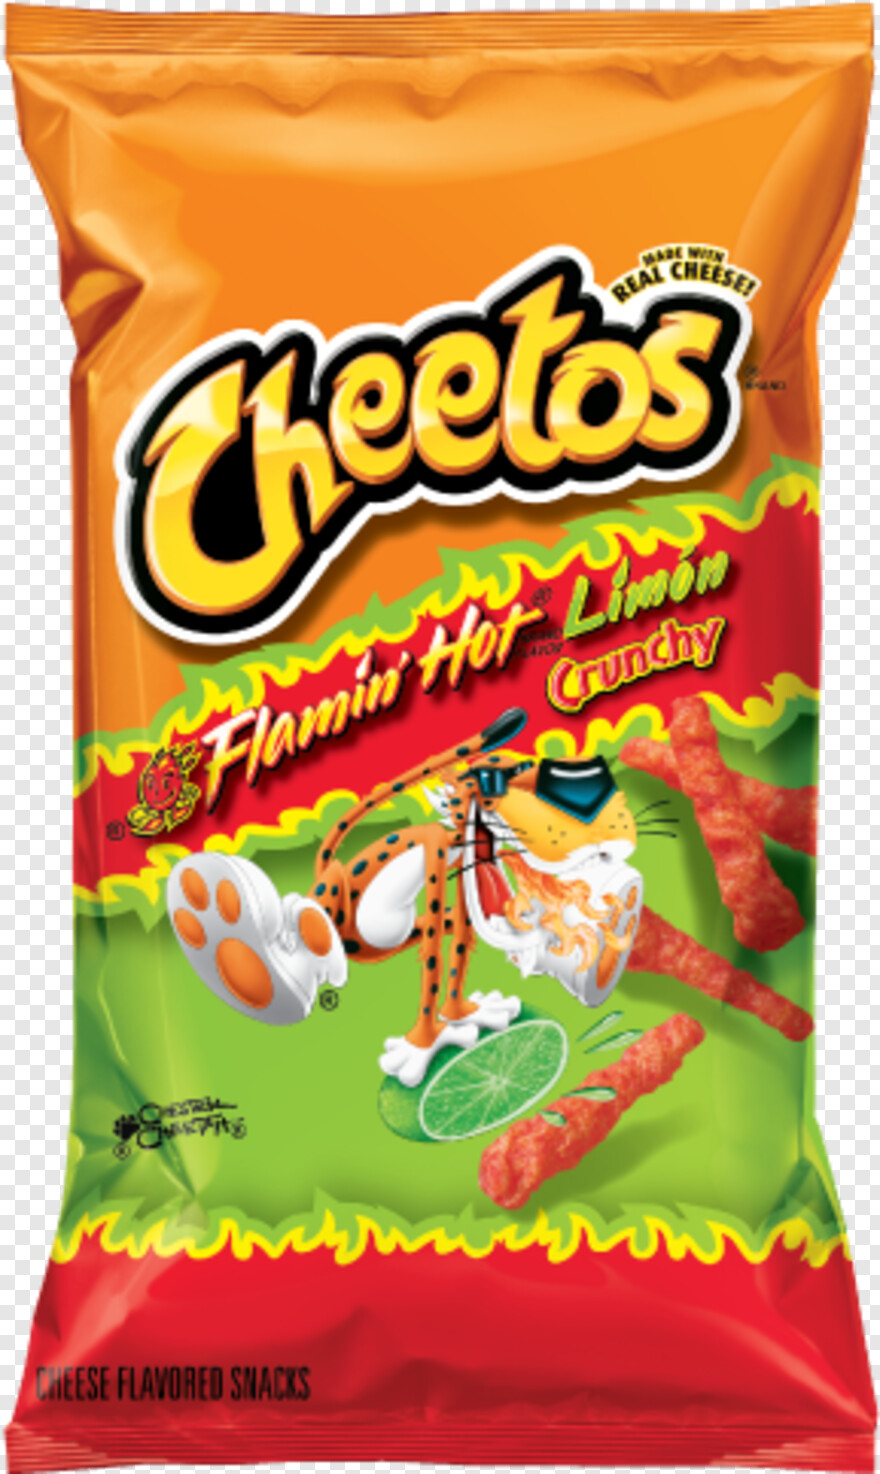 cheetos-logo # 1029542